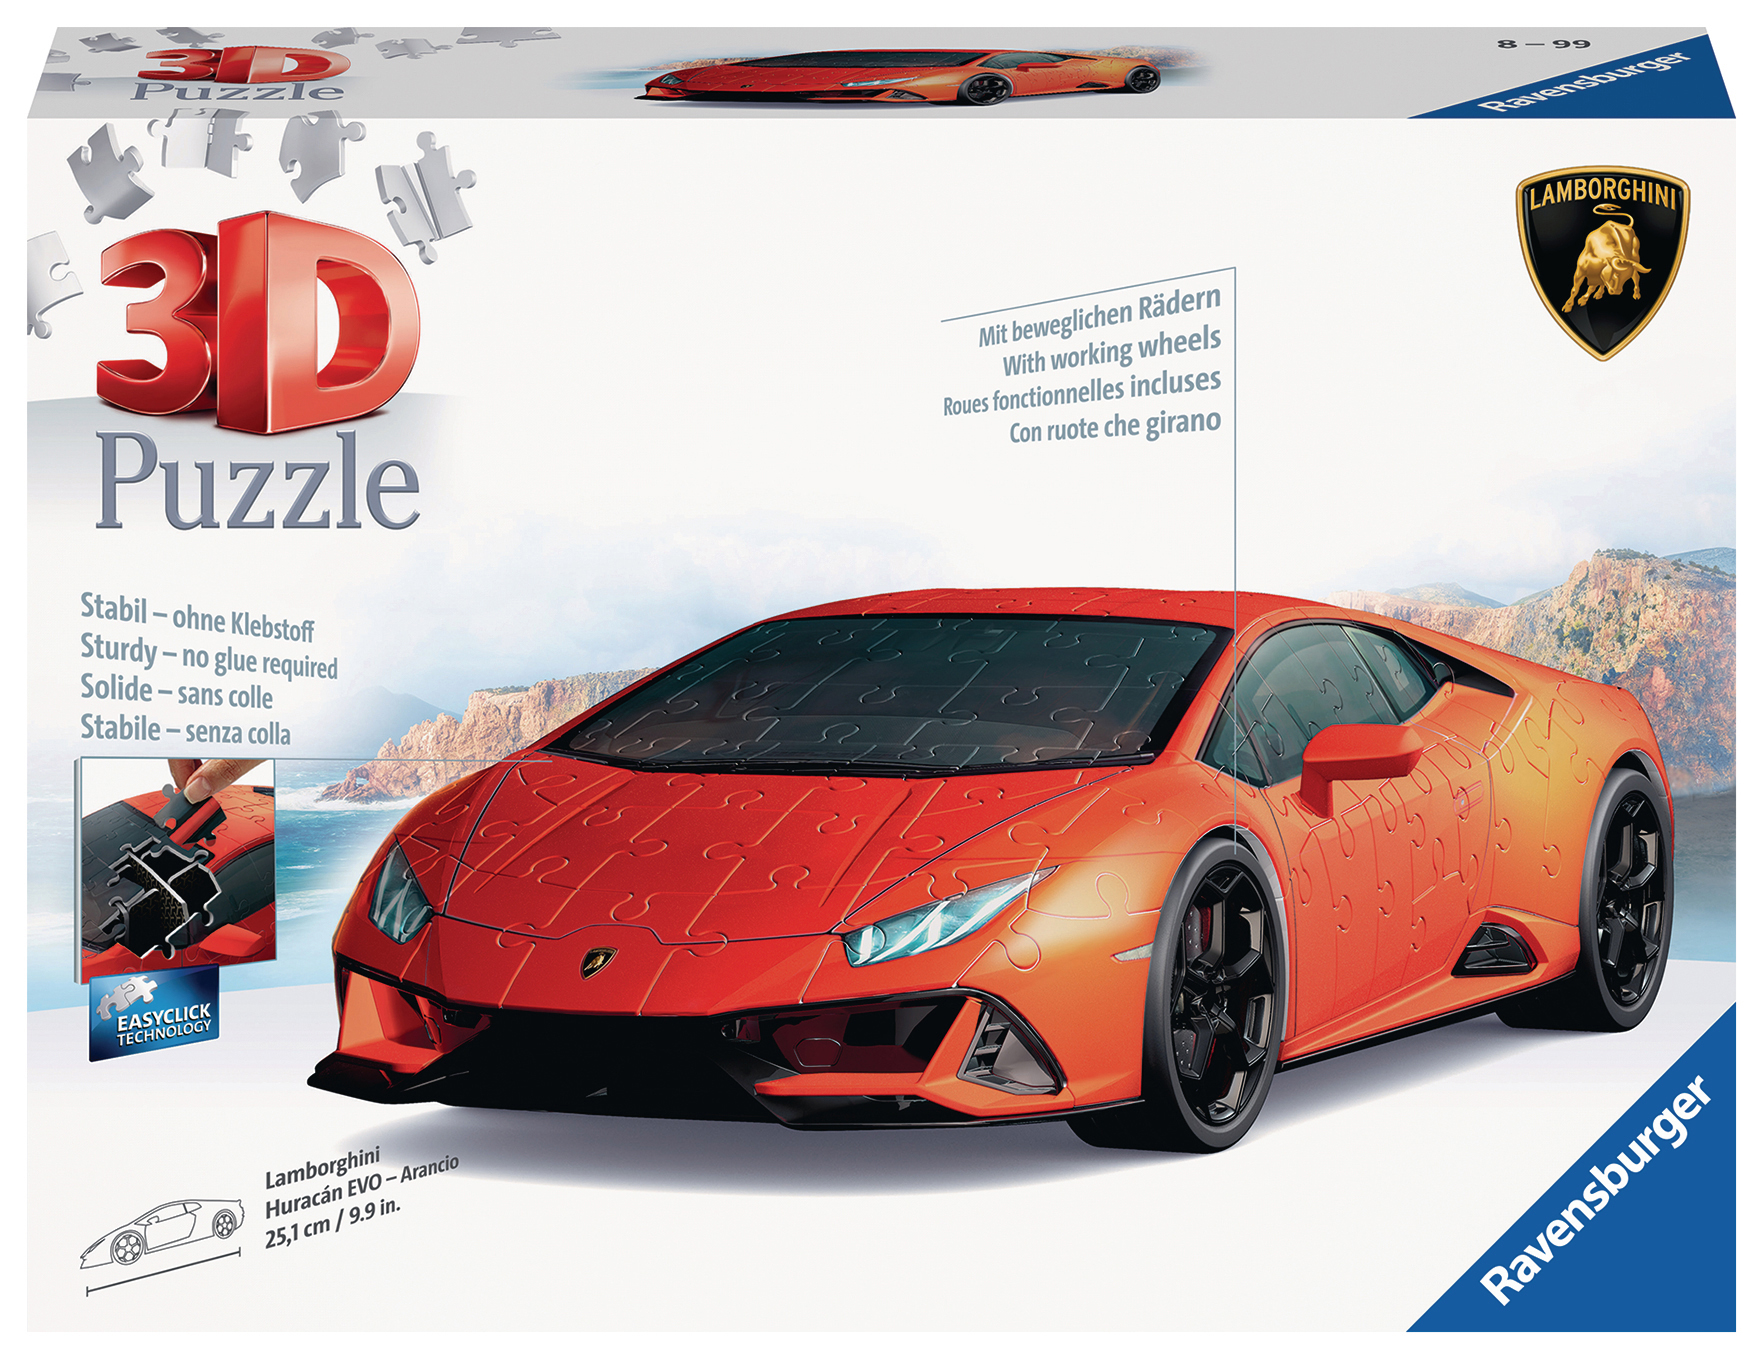 Huracán RAVENSBURGER Arancio - Lamborghini Puzzle 3D EVO